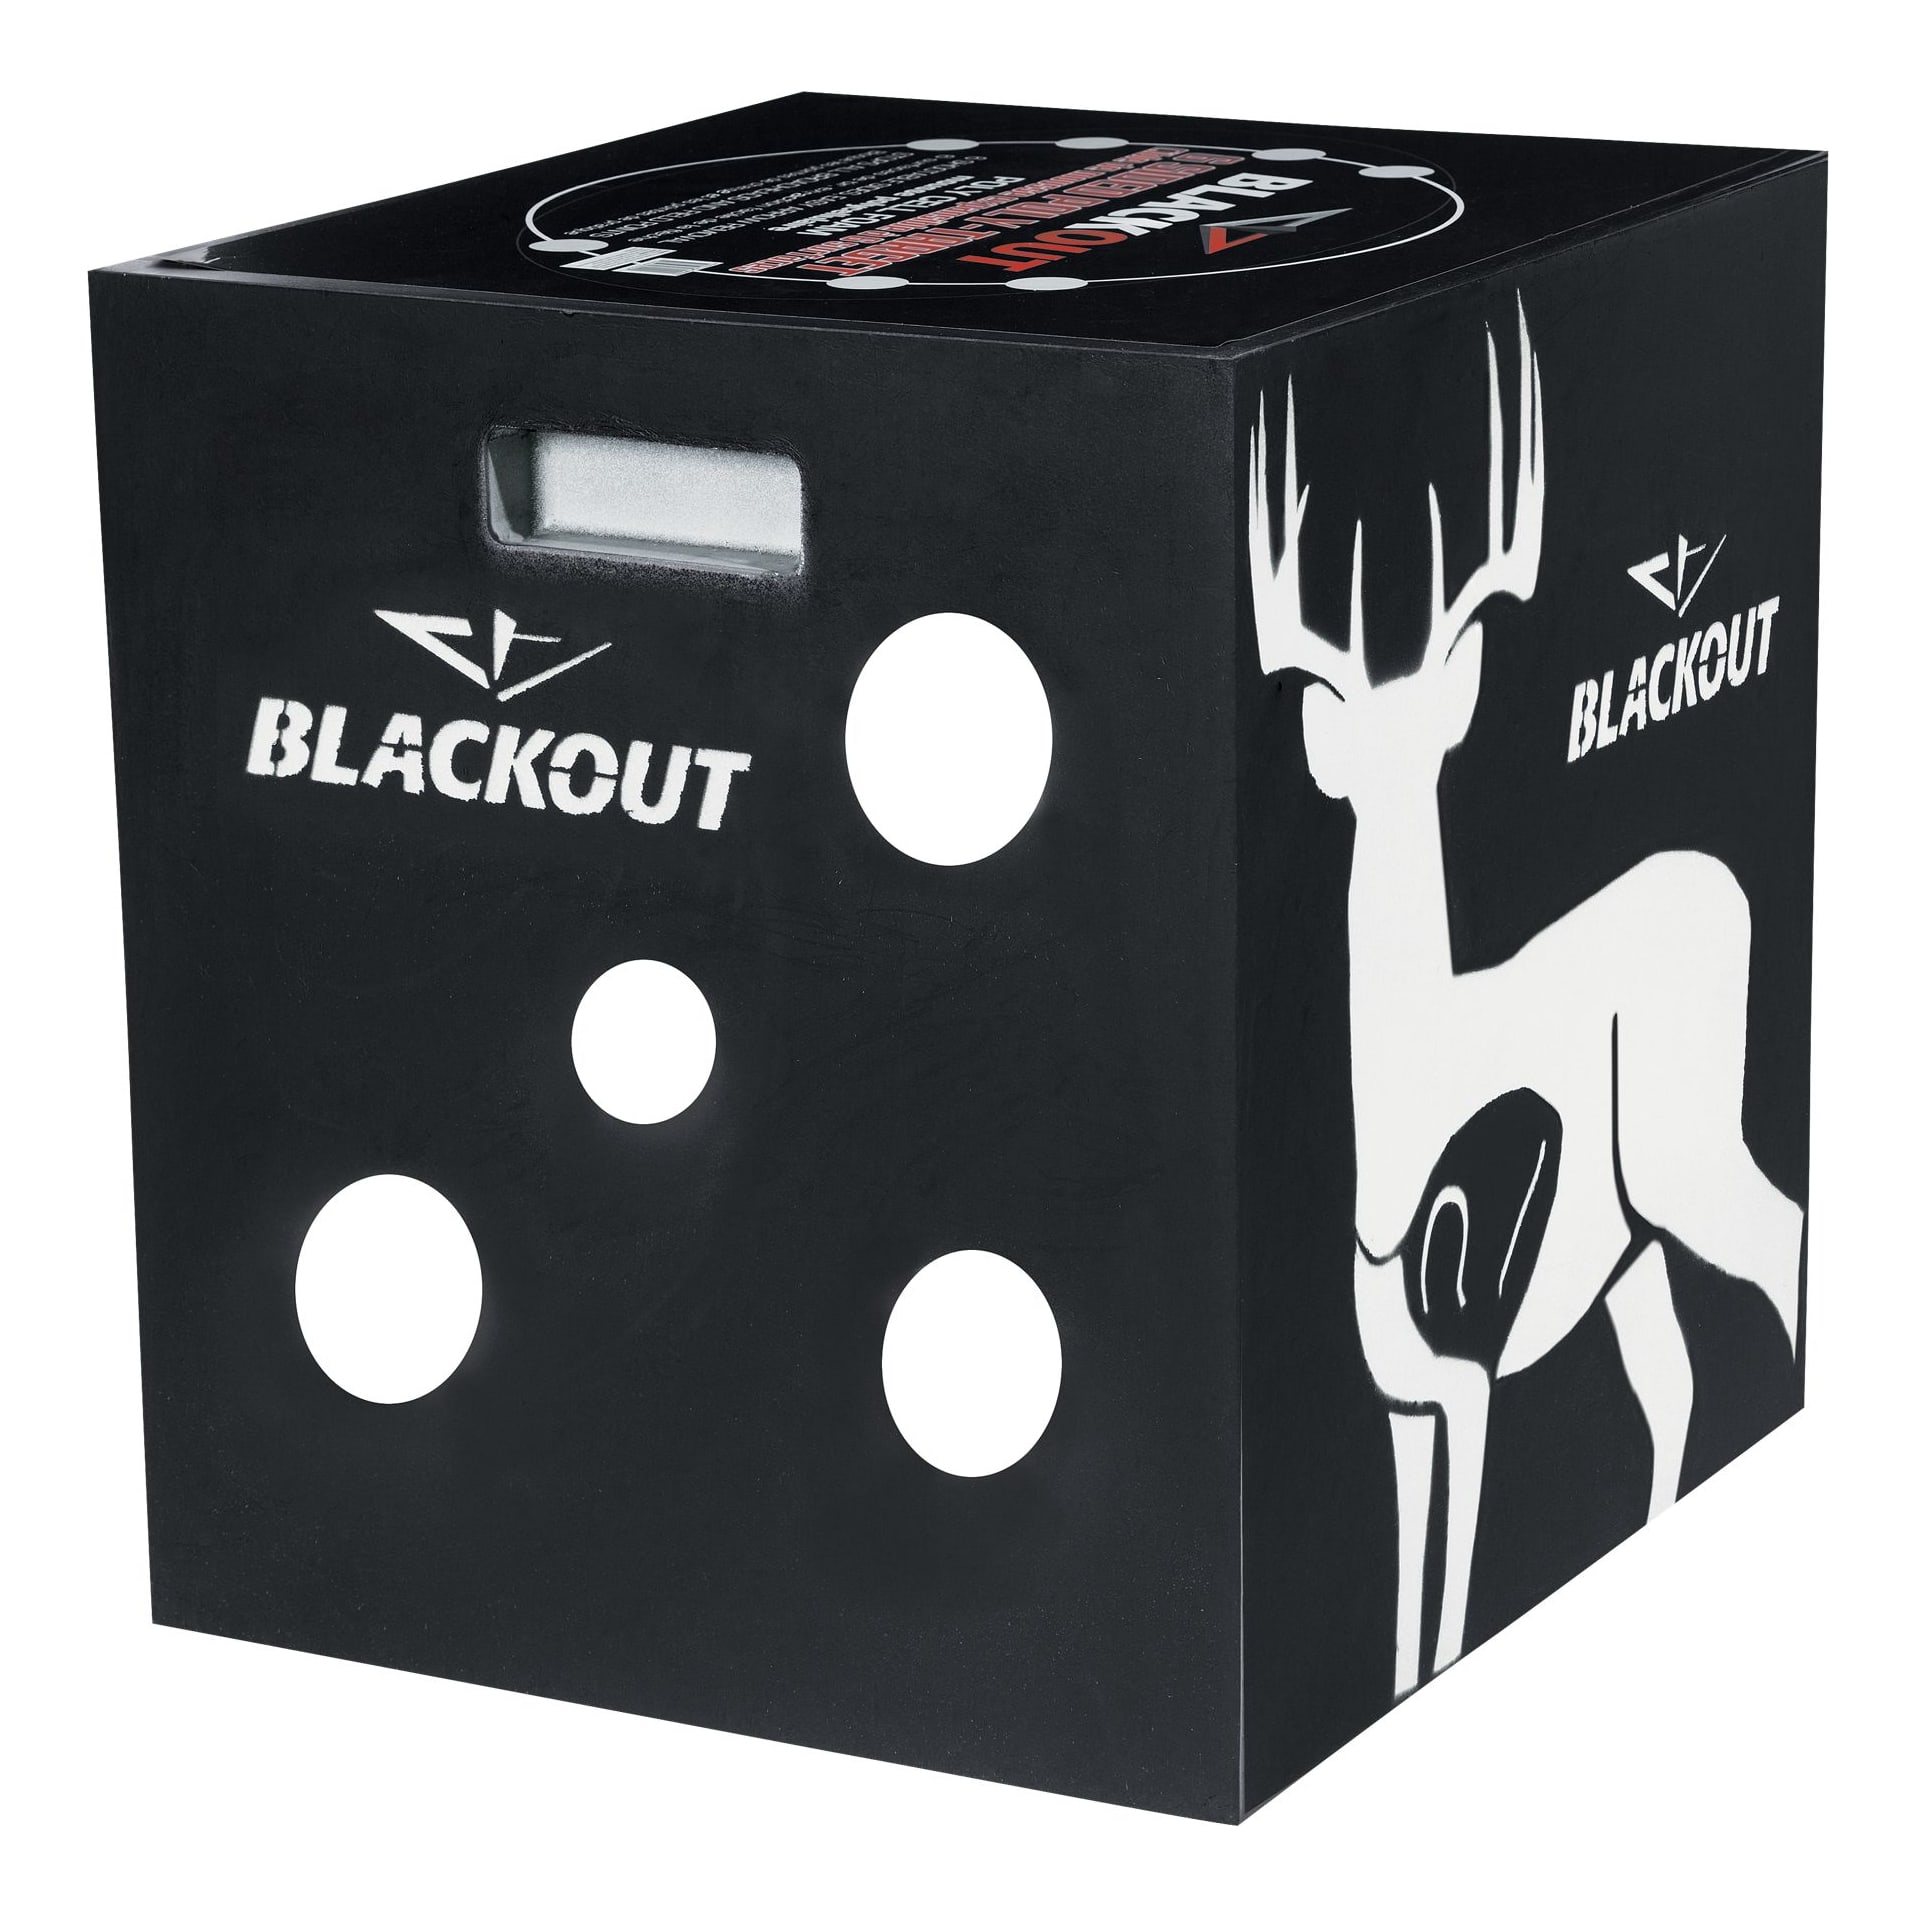 BlackOut 6-Sided Foam Archery Target